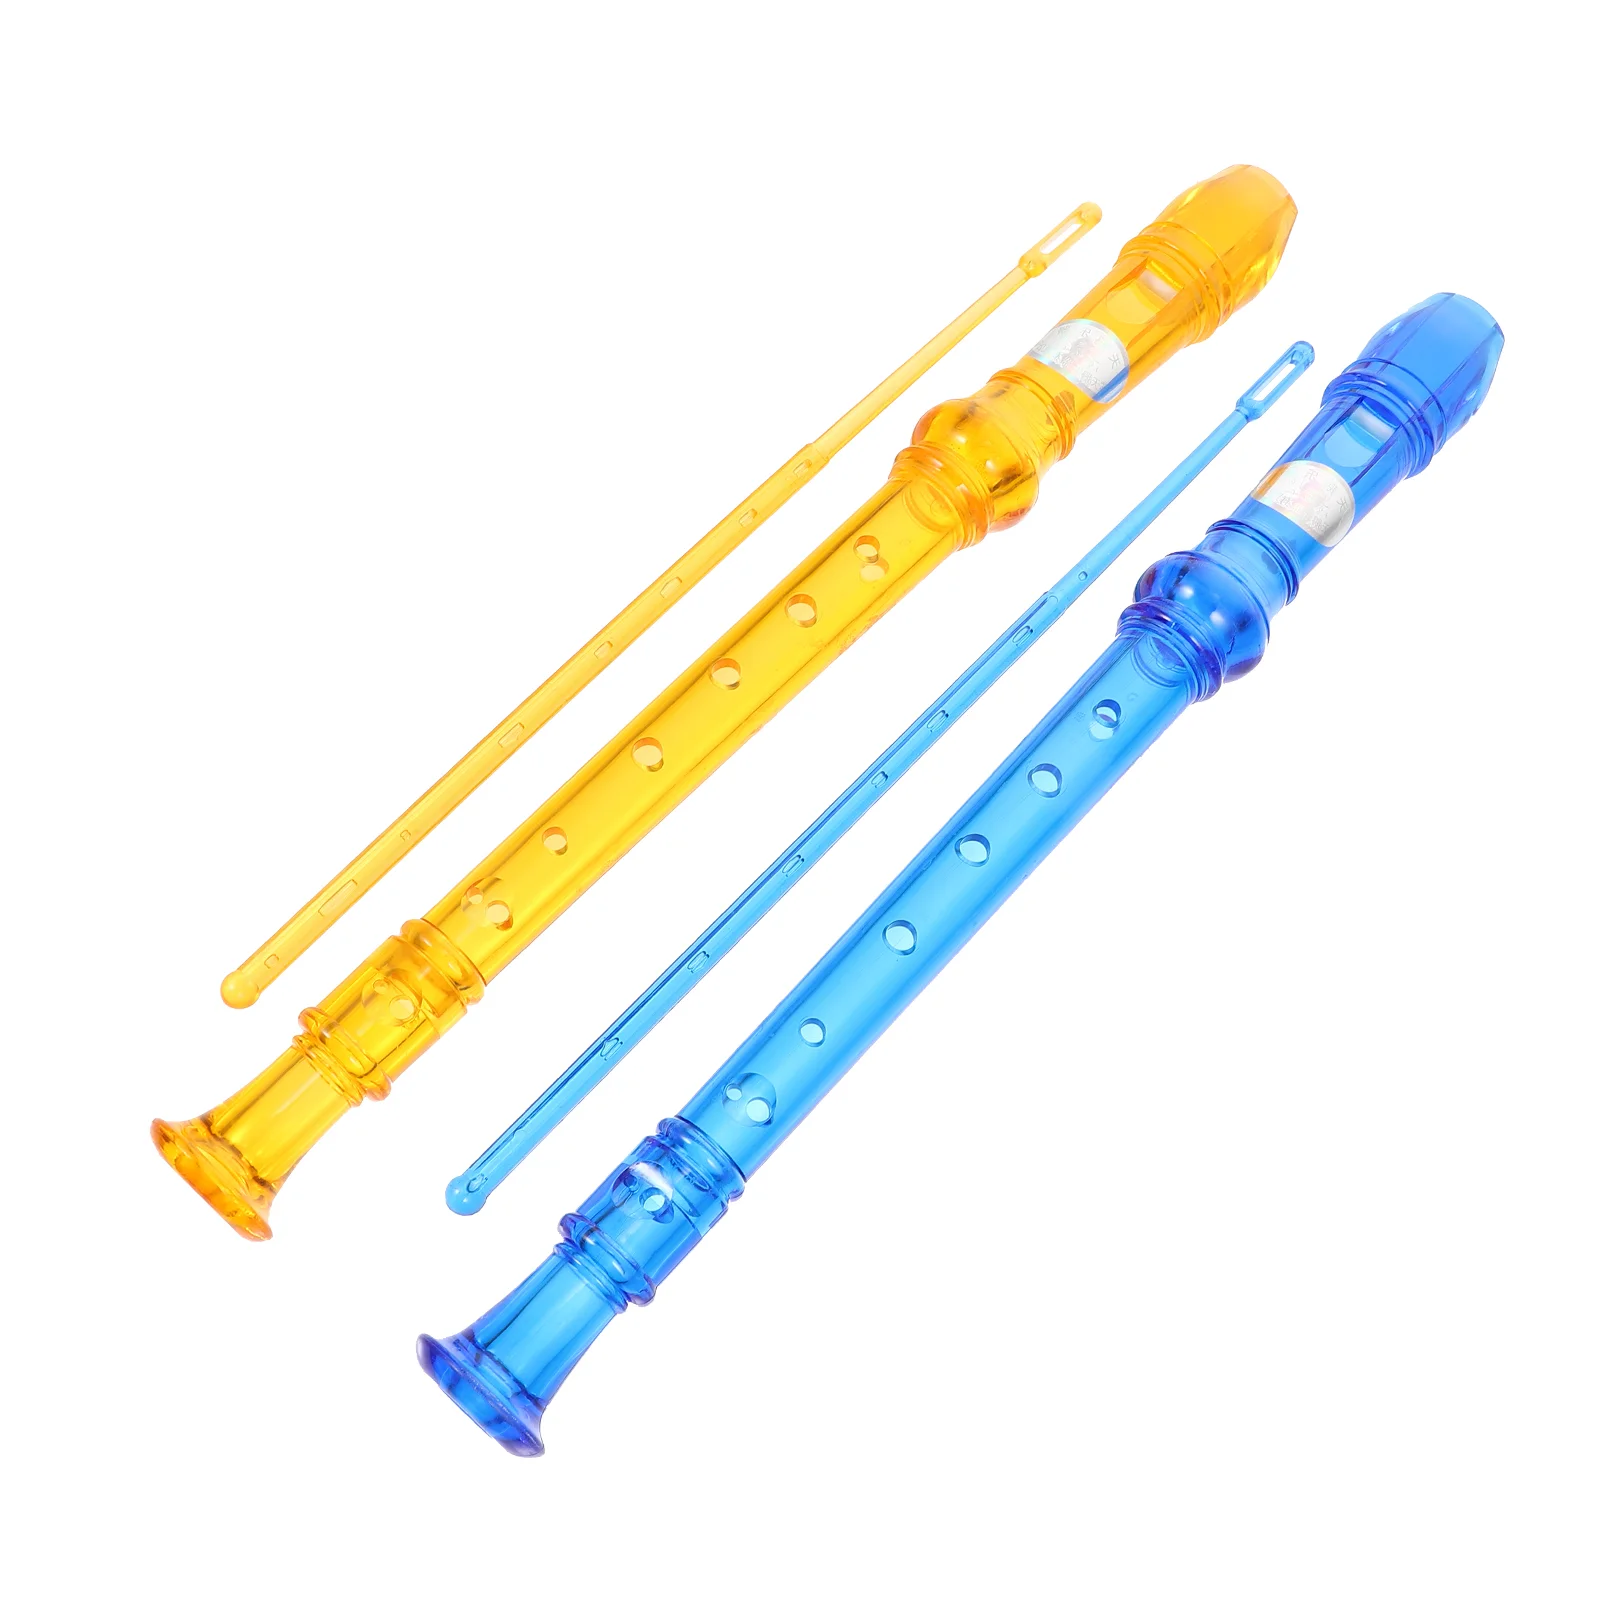 

2 шт. прочный ветровой инструмент для начинающих с 8 отверстиями, кларинеты для практики (оранжевый, синий)